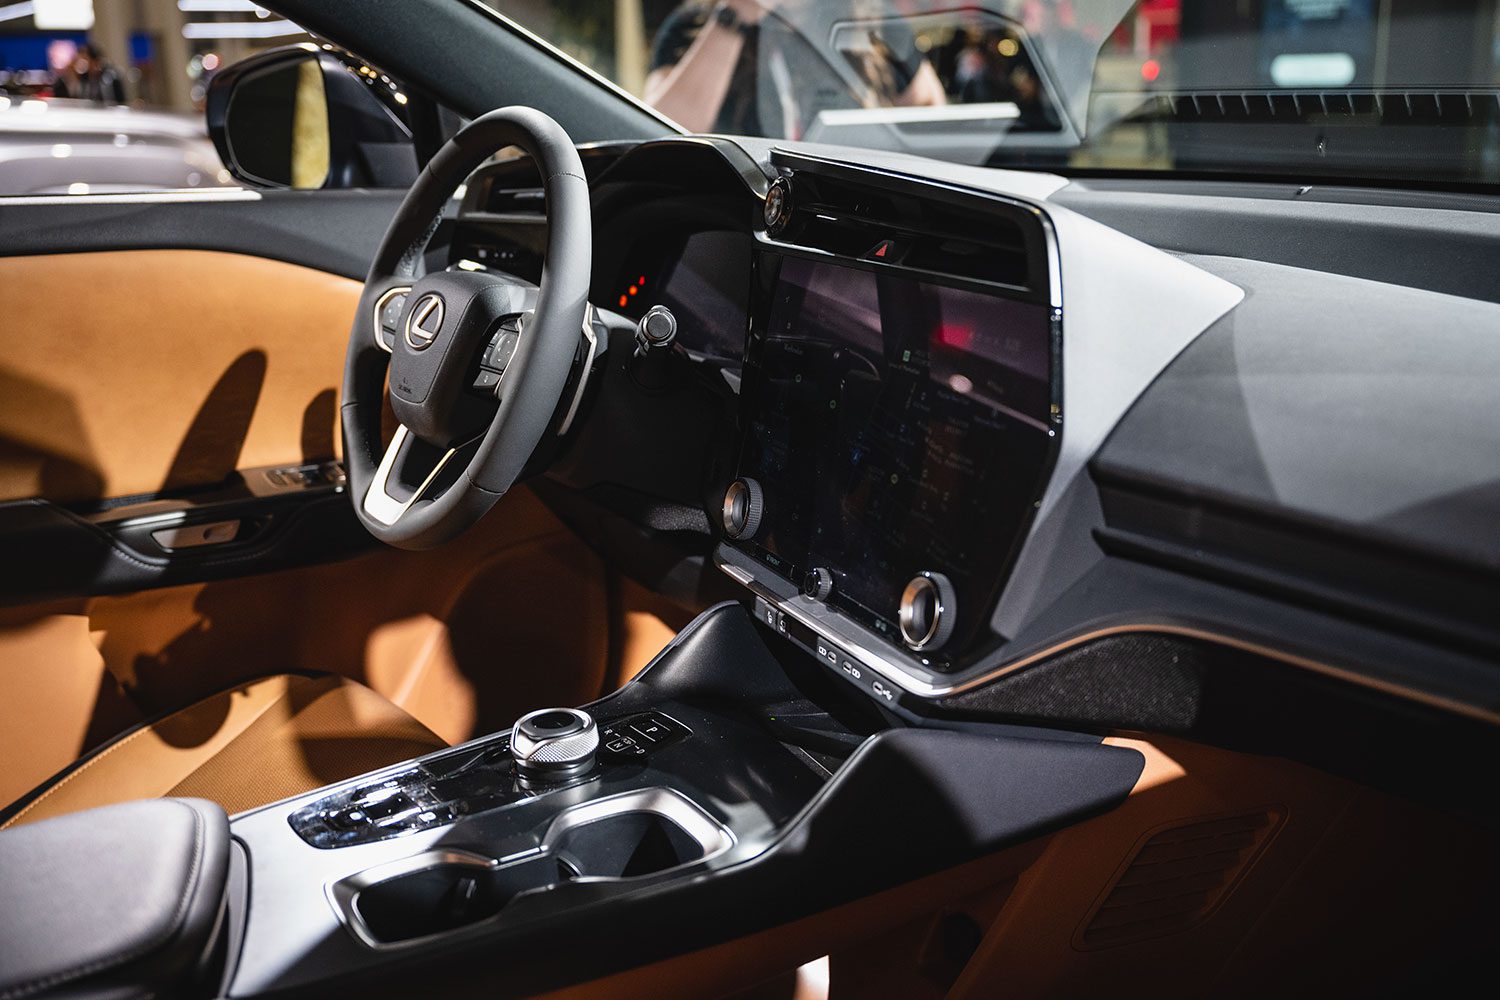 The Lexus RX Interior